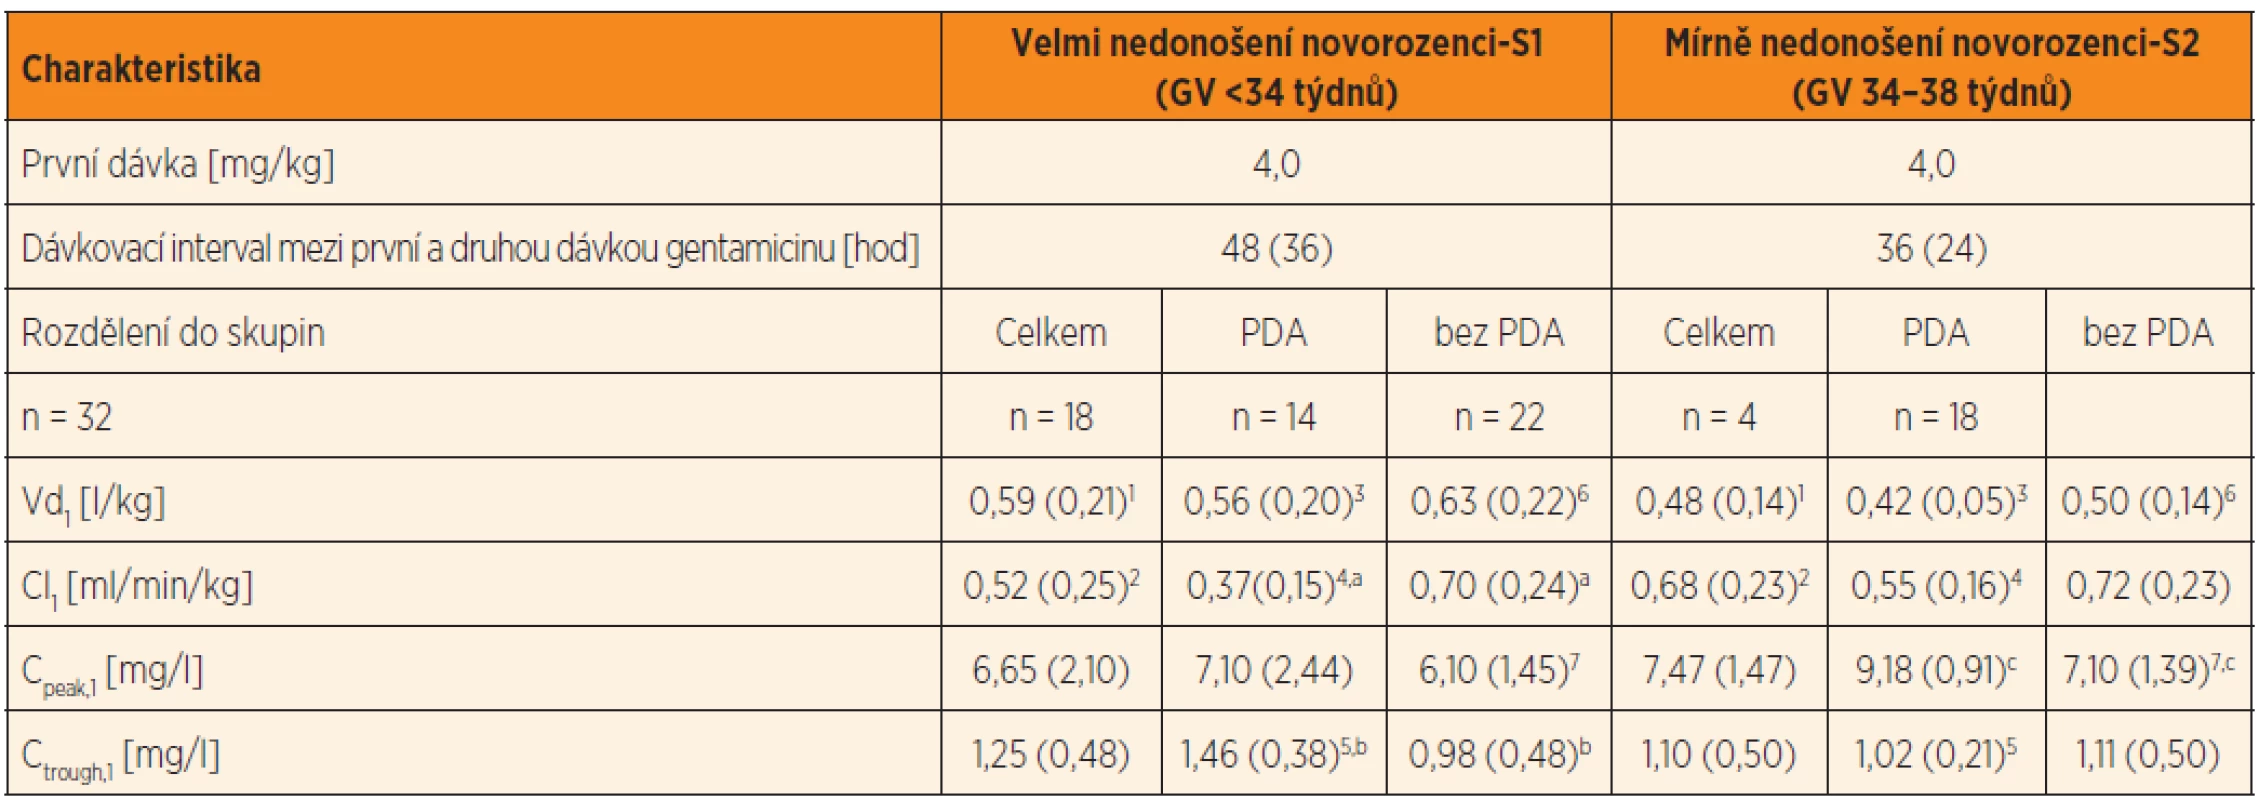 Dávkování gentamicinu, plazmatické koncentrace a odhad PK parametrů gentamicinu po první standardní dávce
4 mg/kg*, podávané 30minutovou i.v. infuzí nedonošeným novorozencům se sepsí v prvním týdnu života. V tabulce
jsou uvedeny PK parametry: distribuční objem a clearance gentamicinu po první dávce gentamicinu ve skupině velmi
nedonošených a mírně nedonošených novorozenců, rozdělených do skupin podle perzistujícího ductus arteriosus (PDA)
a bez perzistujícího ductus arteriosus (bez PDA).